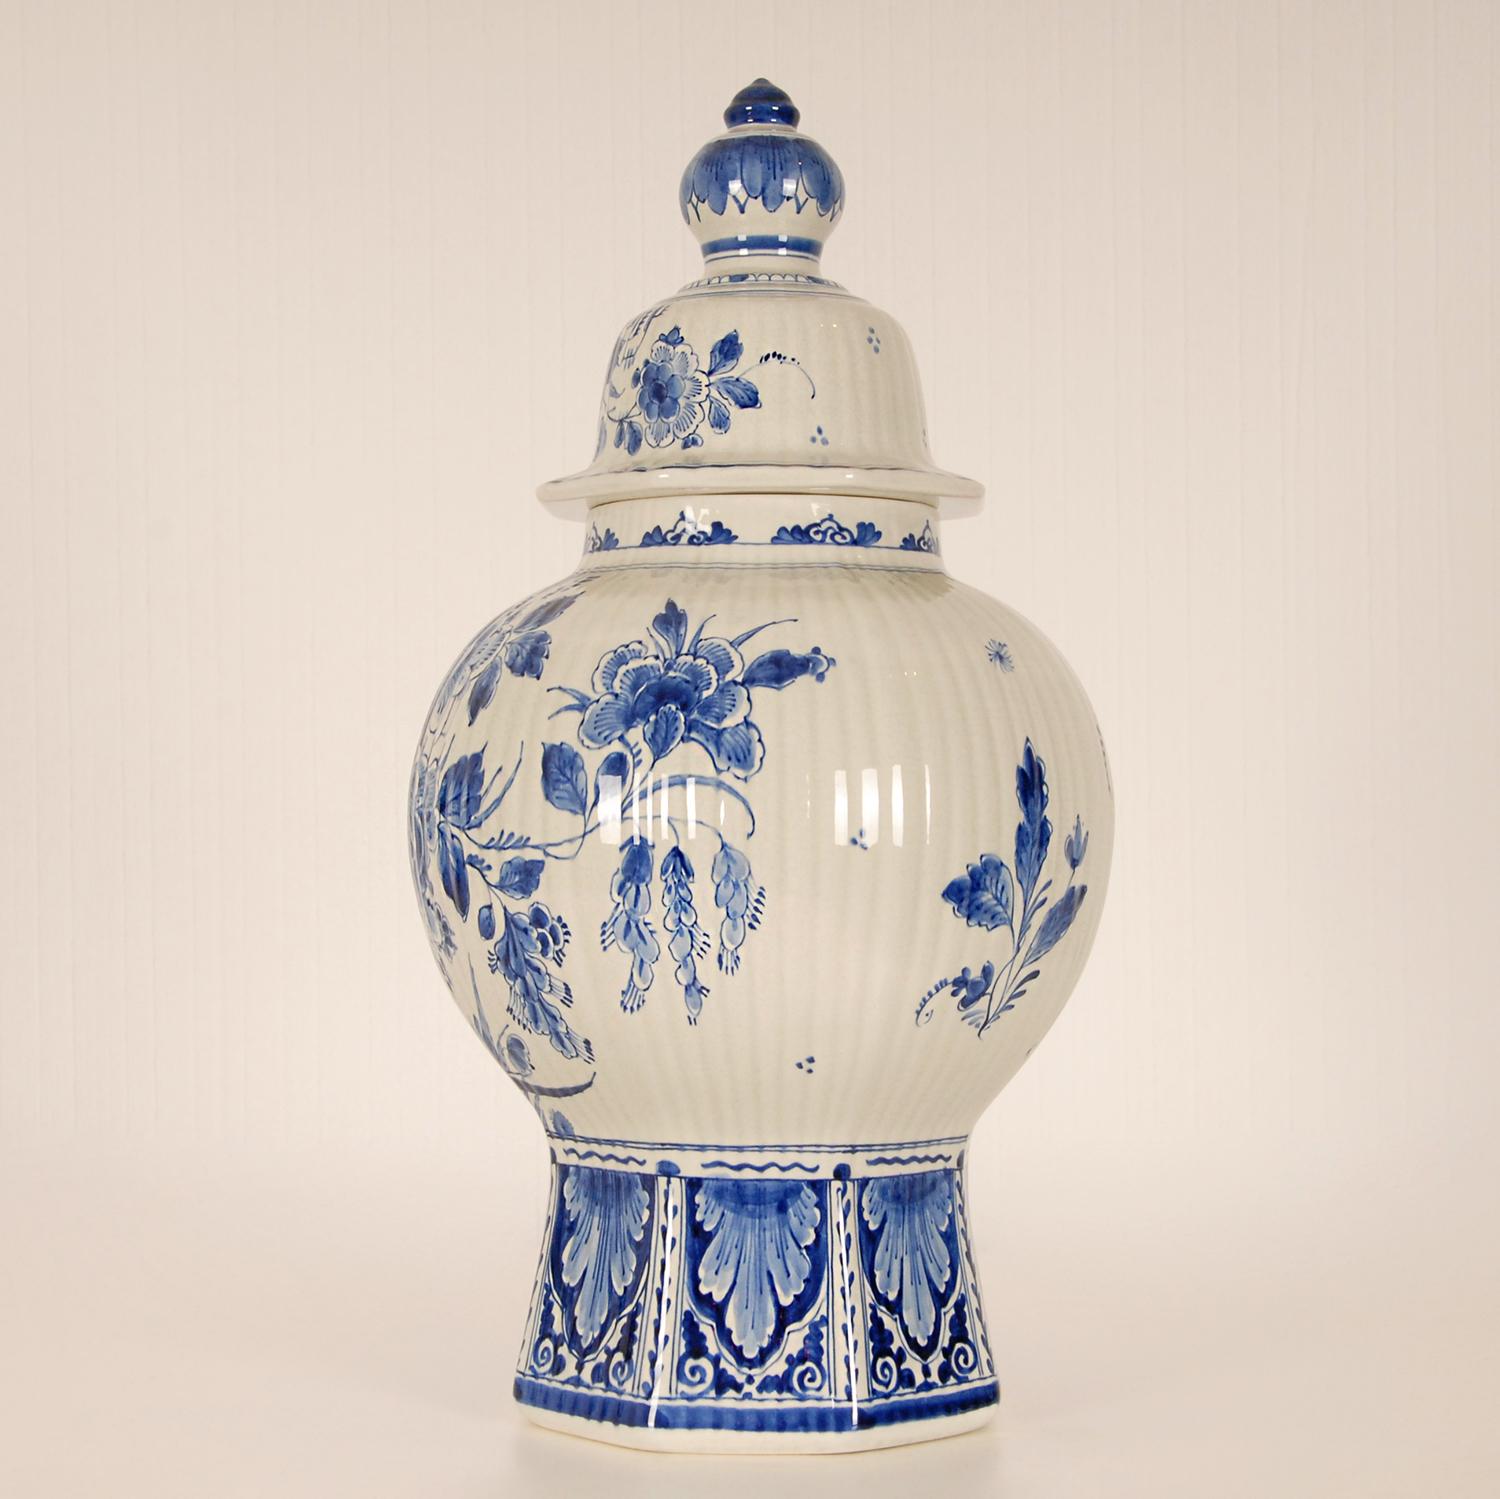 Hand-Crafted Royal Delft Covered Baluster Vase Earthenware Blue & White Vase Urn